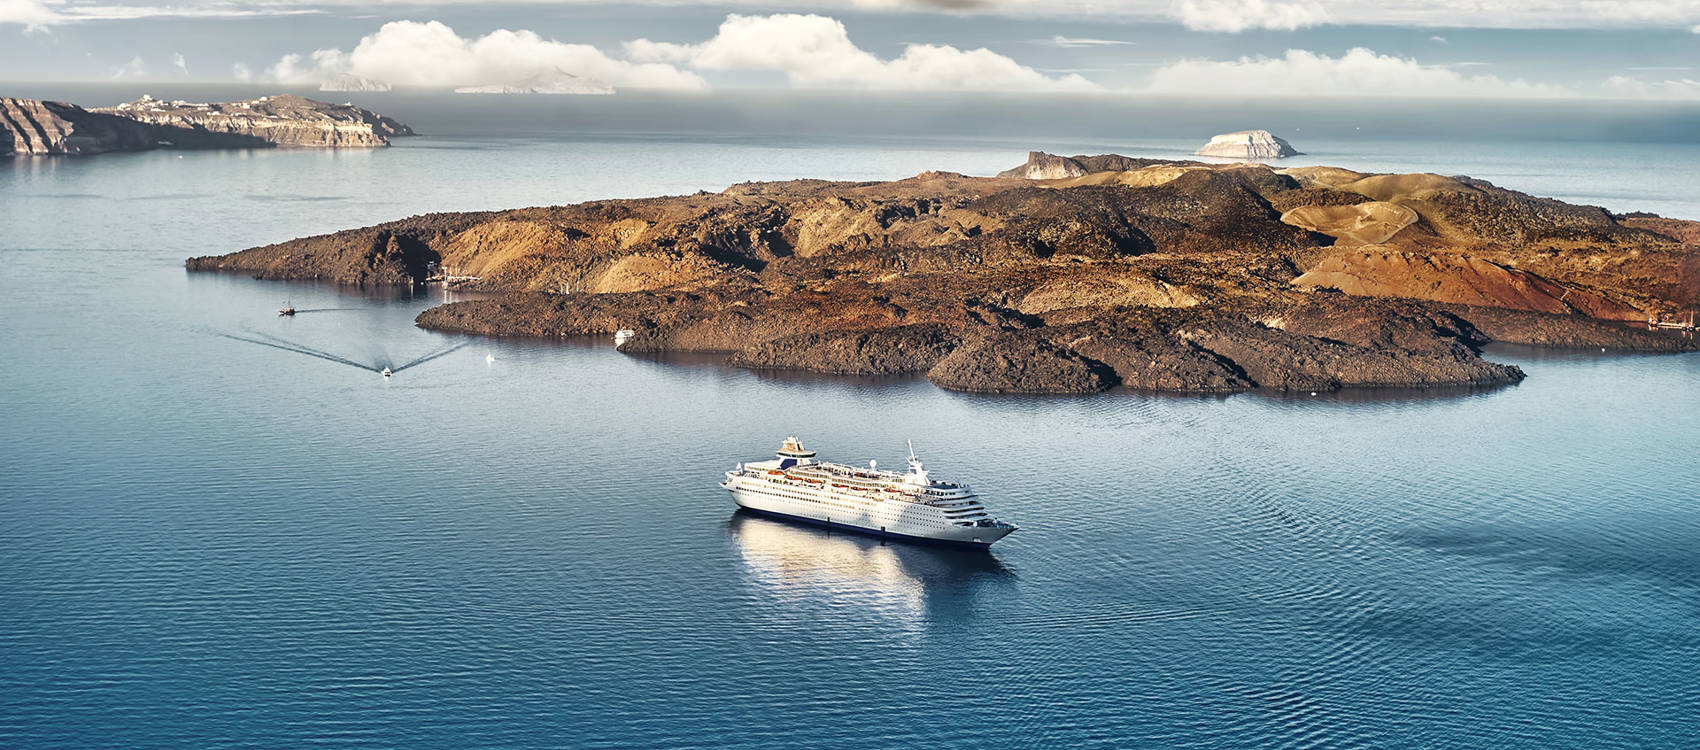 
Πανοραμική θέα της μαγευτικής Σαντορίνης: Απέραντο γαλάζιο της θάλασσας συναντά τα καταπράσινα κρατήρα του νησιού, δημιουργώντας μια αξέχαστη εικόνα.